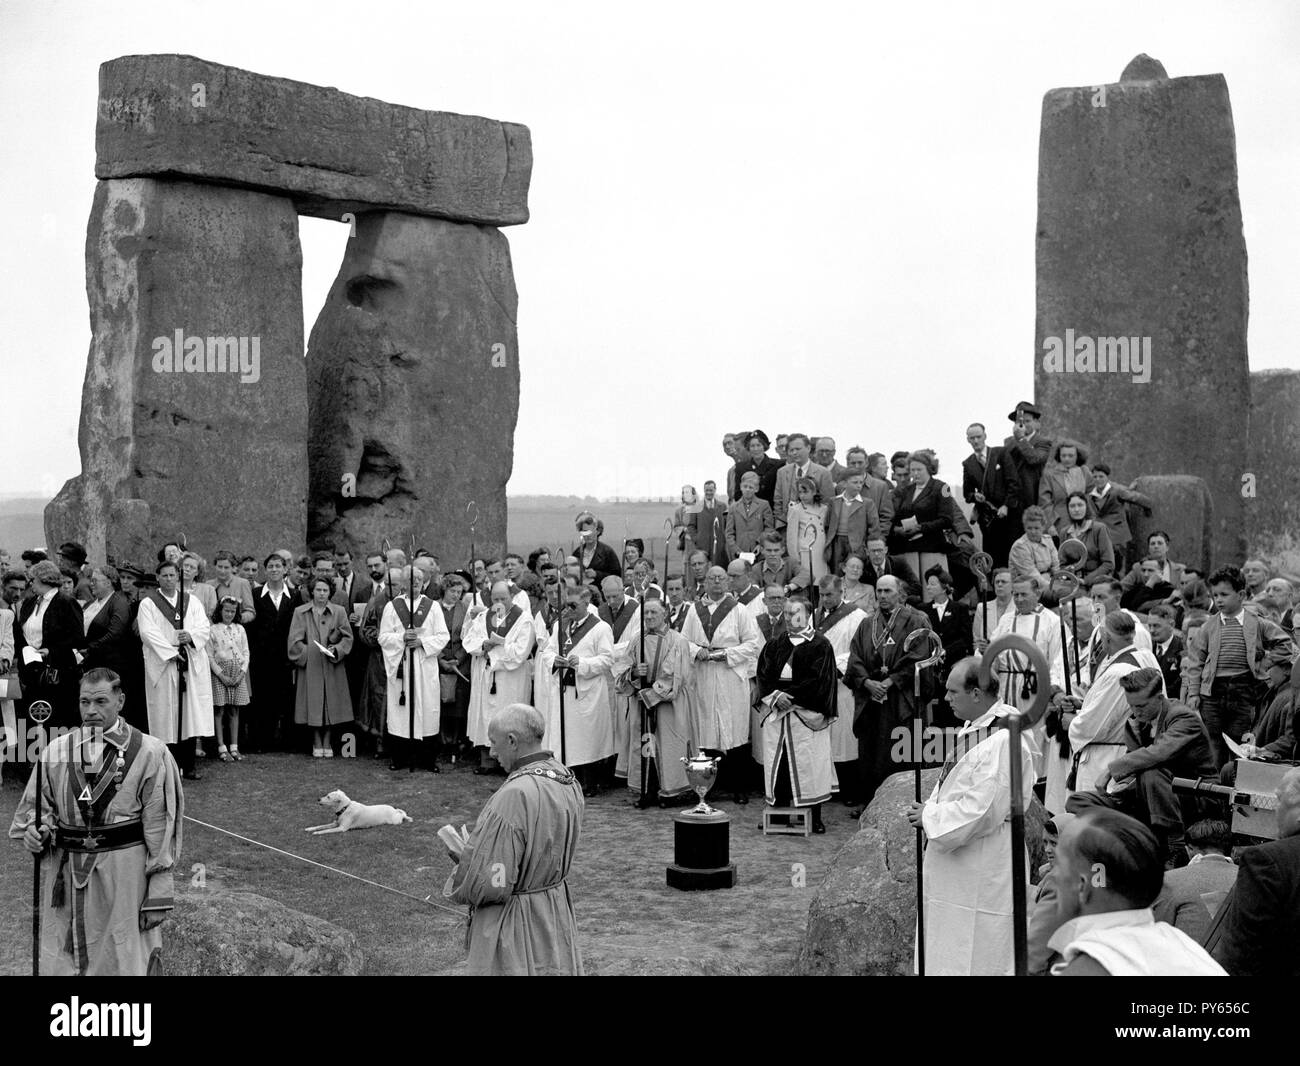 Foto vom 20/06/1949 der Mitglieder der Haemus Lodge (Brighton und Worthing in Sussex) während ihrer Mitte Sommer Zeremonie in Stonehenge. Der Standort in Wiltshire ist Kennzeichnung hundert Jahre seit Stonehenge der Nation gespendet wurde. Stockfoto